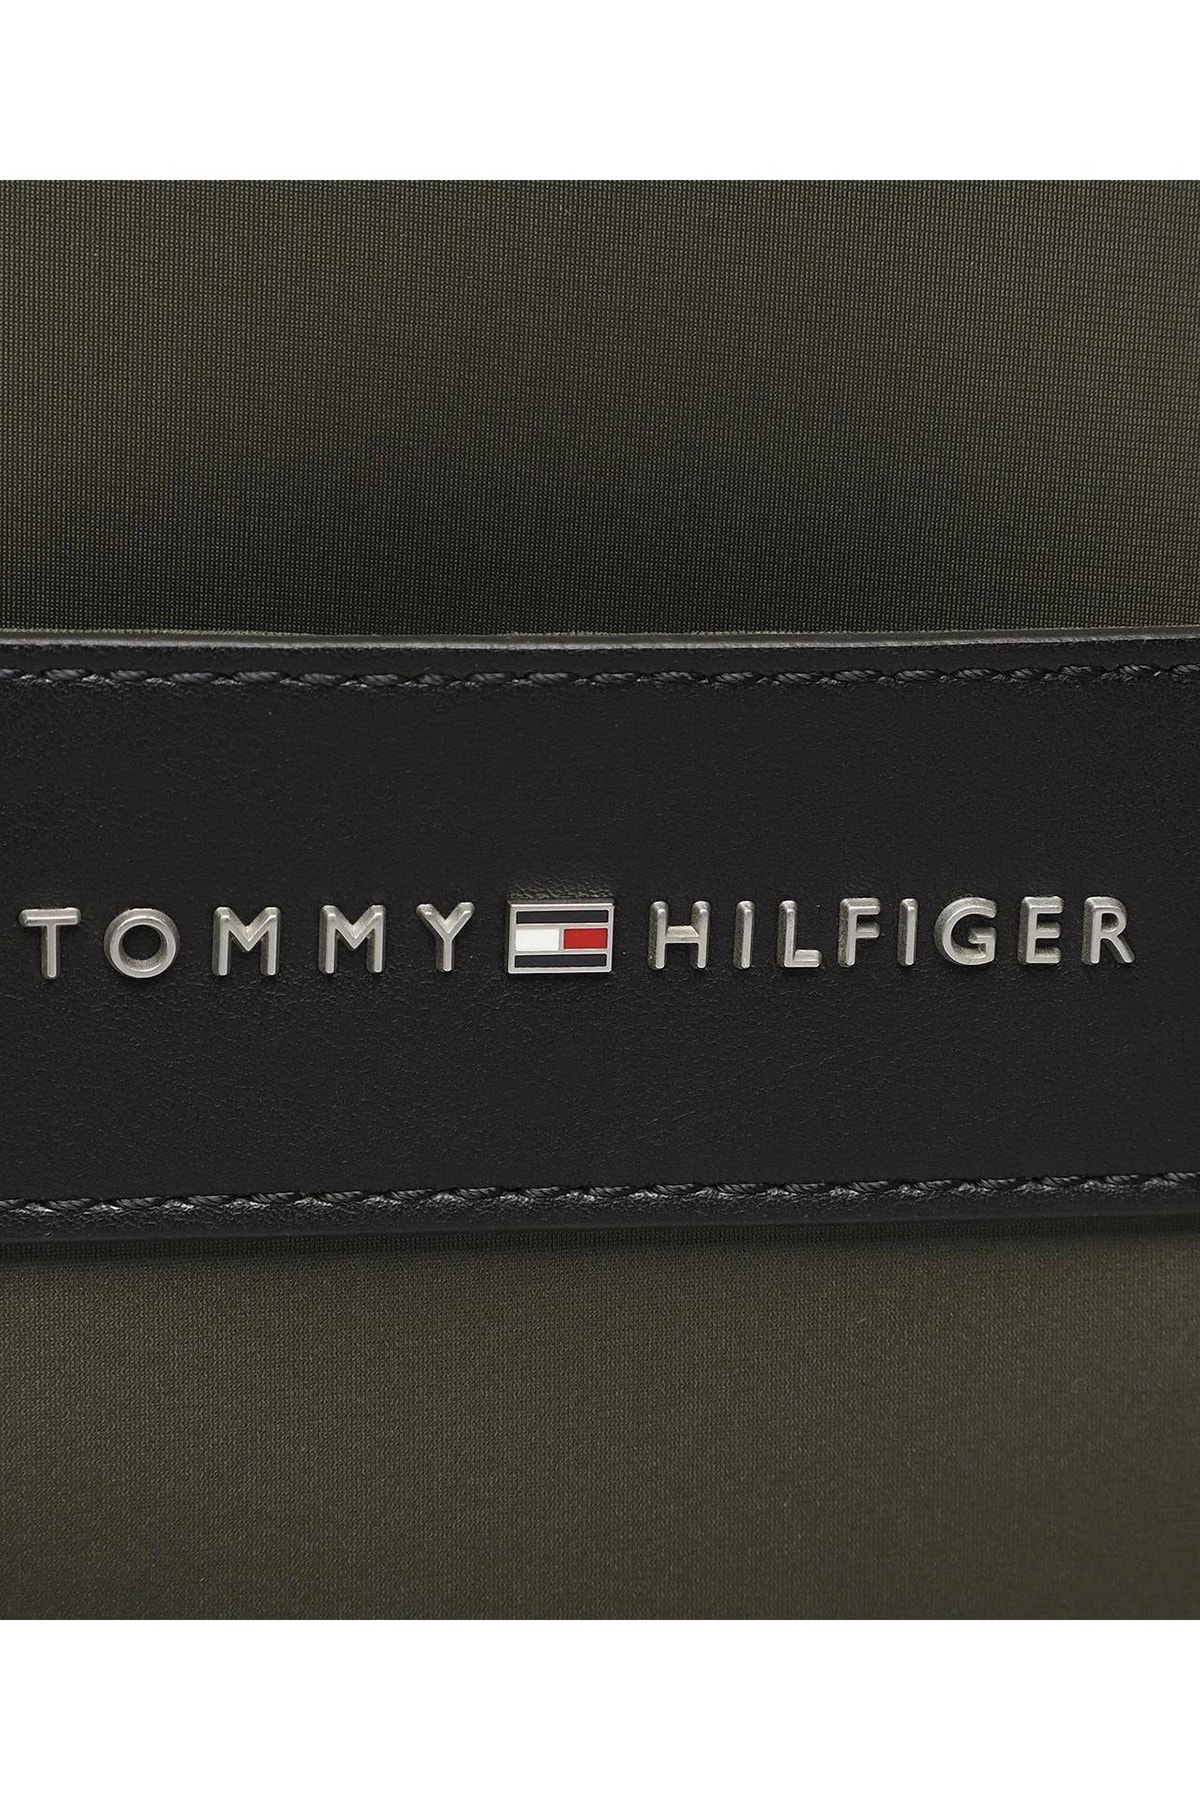 Tommy Jeans Erkek Haki El Çantası/çanta ( Model Kodu : Am0am10566 )